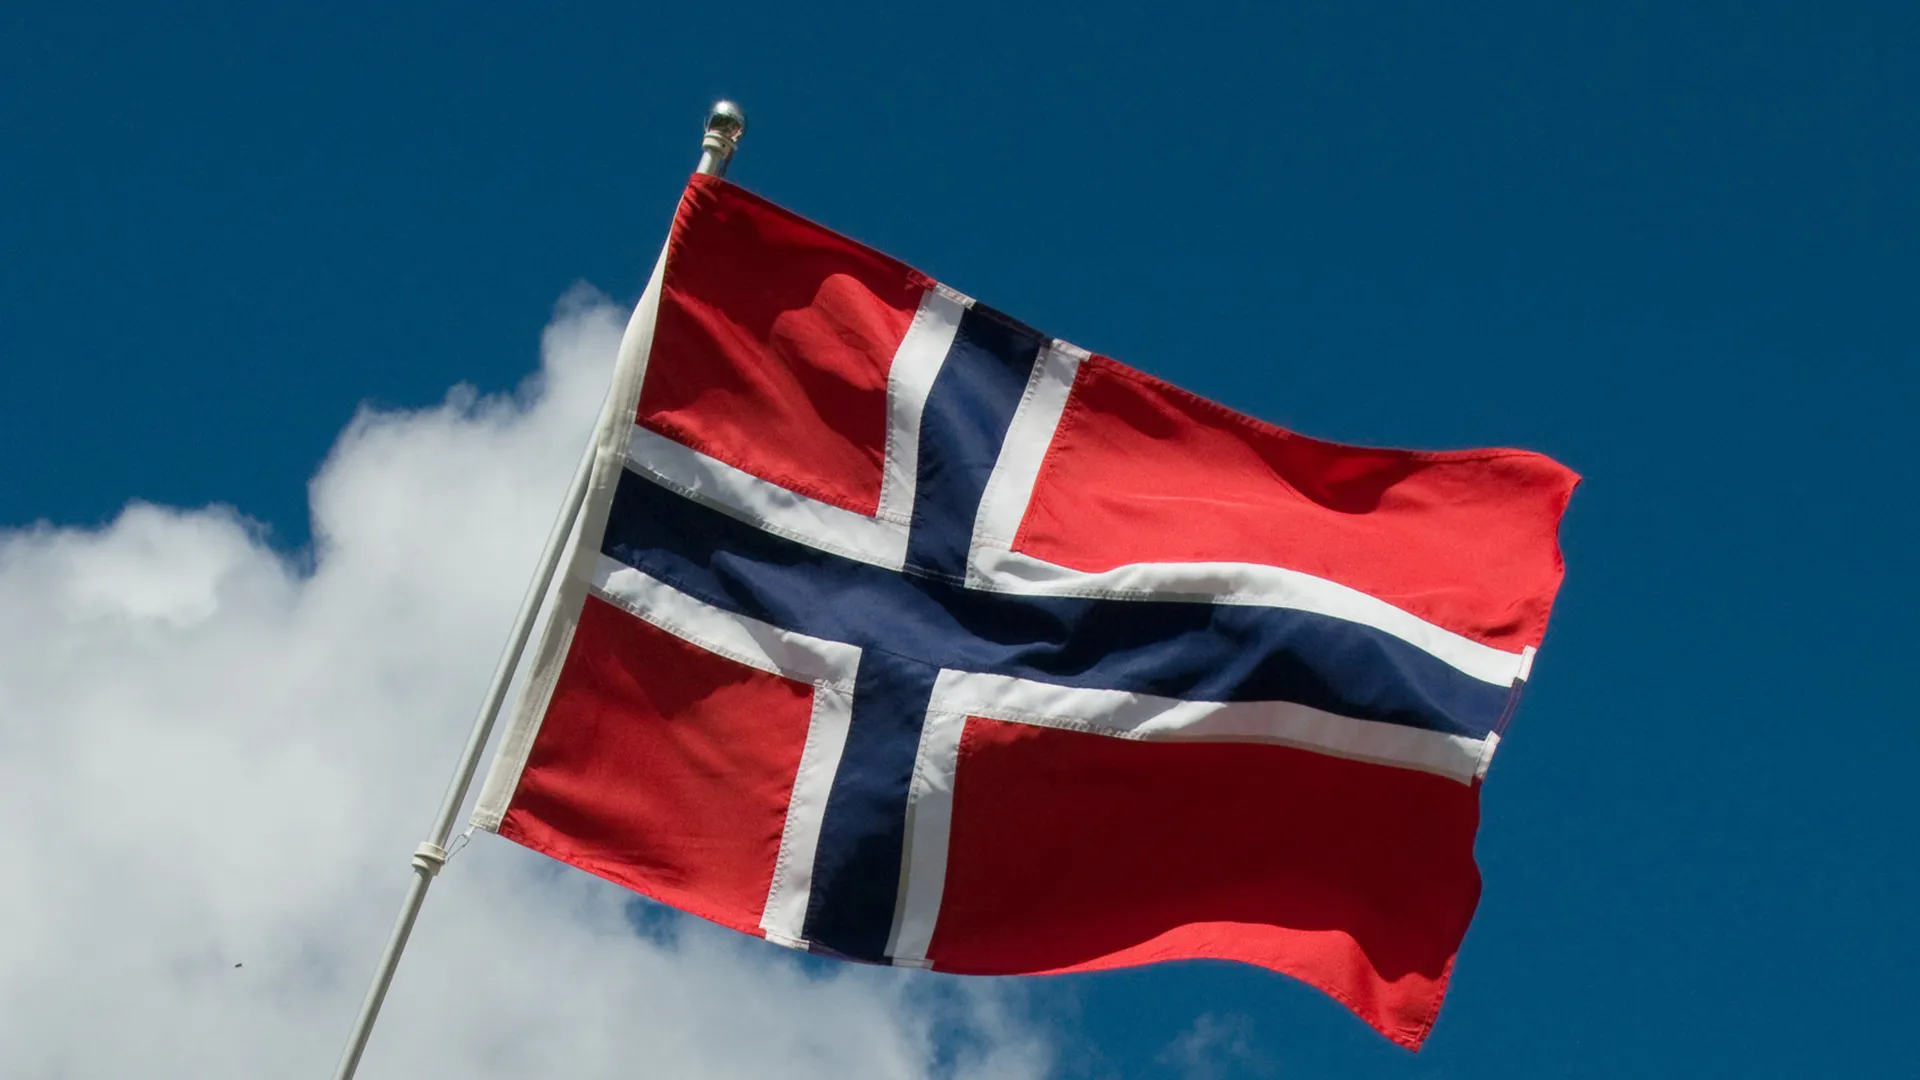 Εντοπίστηκε στη Νορβηγία ο 6χρονος: “Είναι σε ασφαλές μέρος με τον πατέρα του”